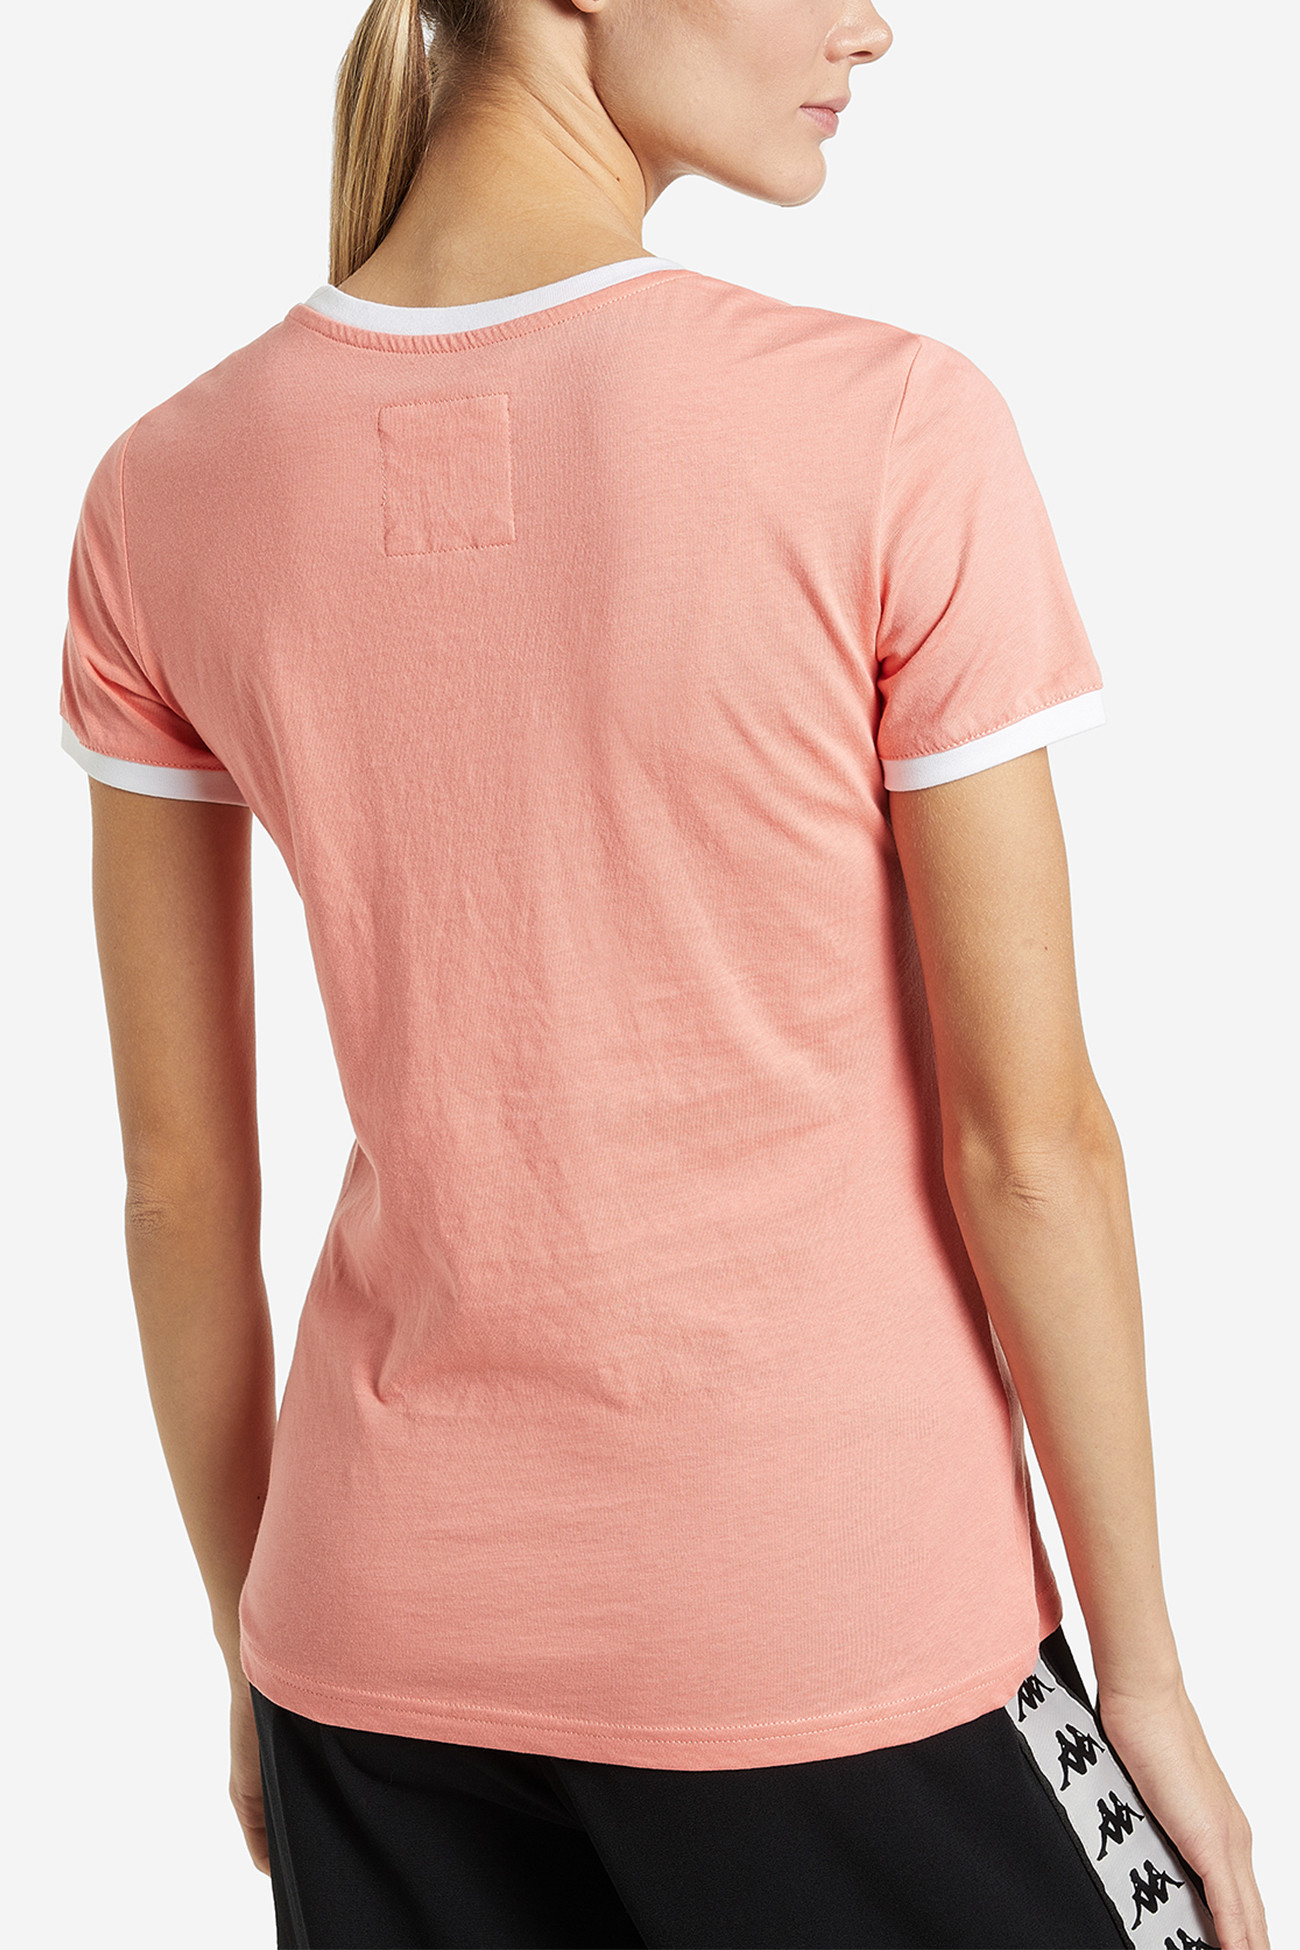 Футболка женская Kappa T-shirt розовая 110738-R0 изображение 3